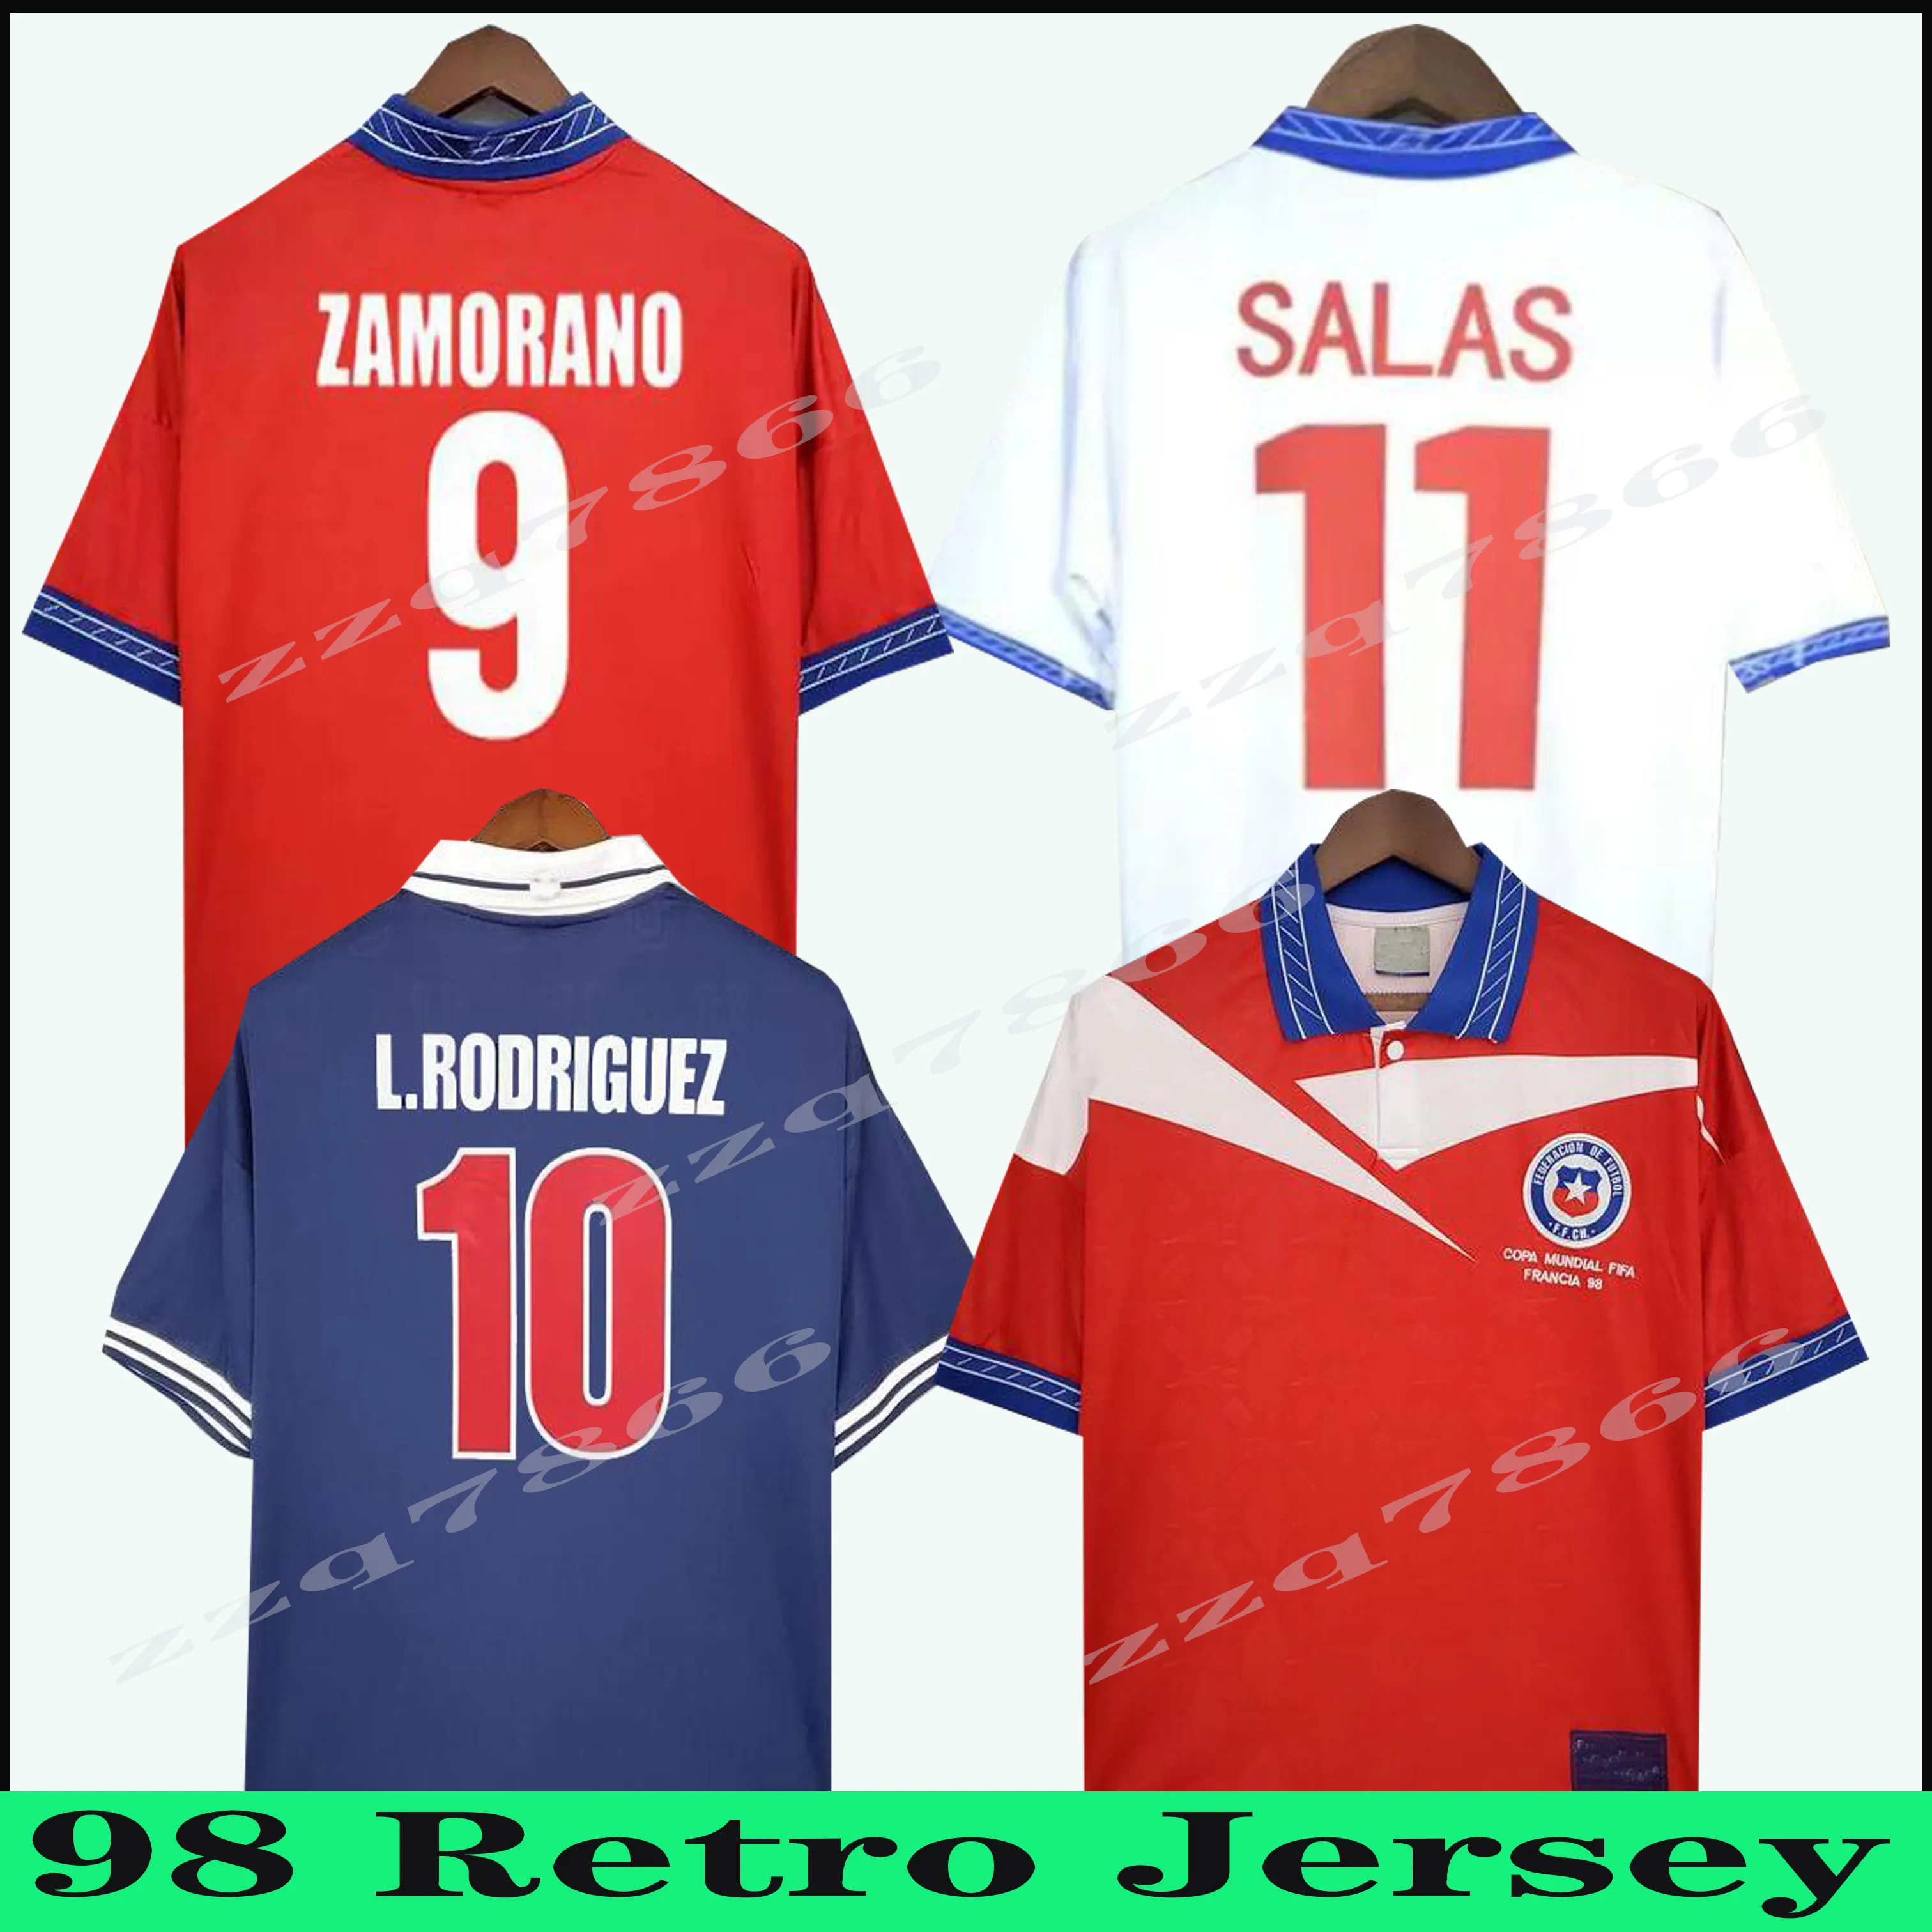 1998 Coppa del mondo di Cile maglia da calcio retrò finale SALAS Zamorano 98 casa rossa trasferta magliette da calcio vintage classica Neira Rozental Acuna Sierra Uniform